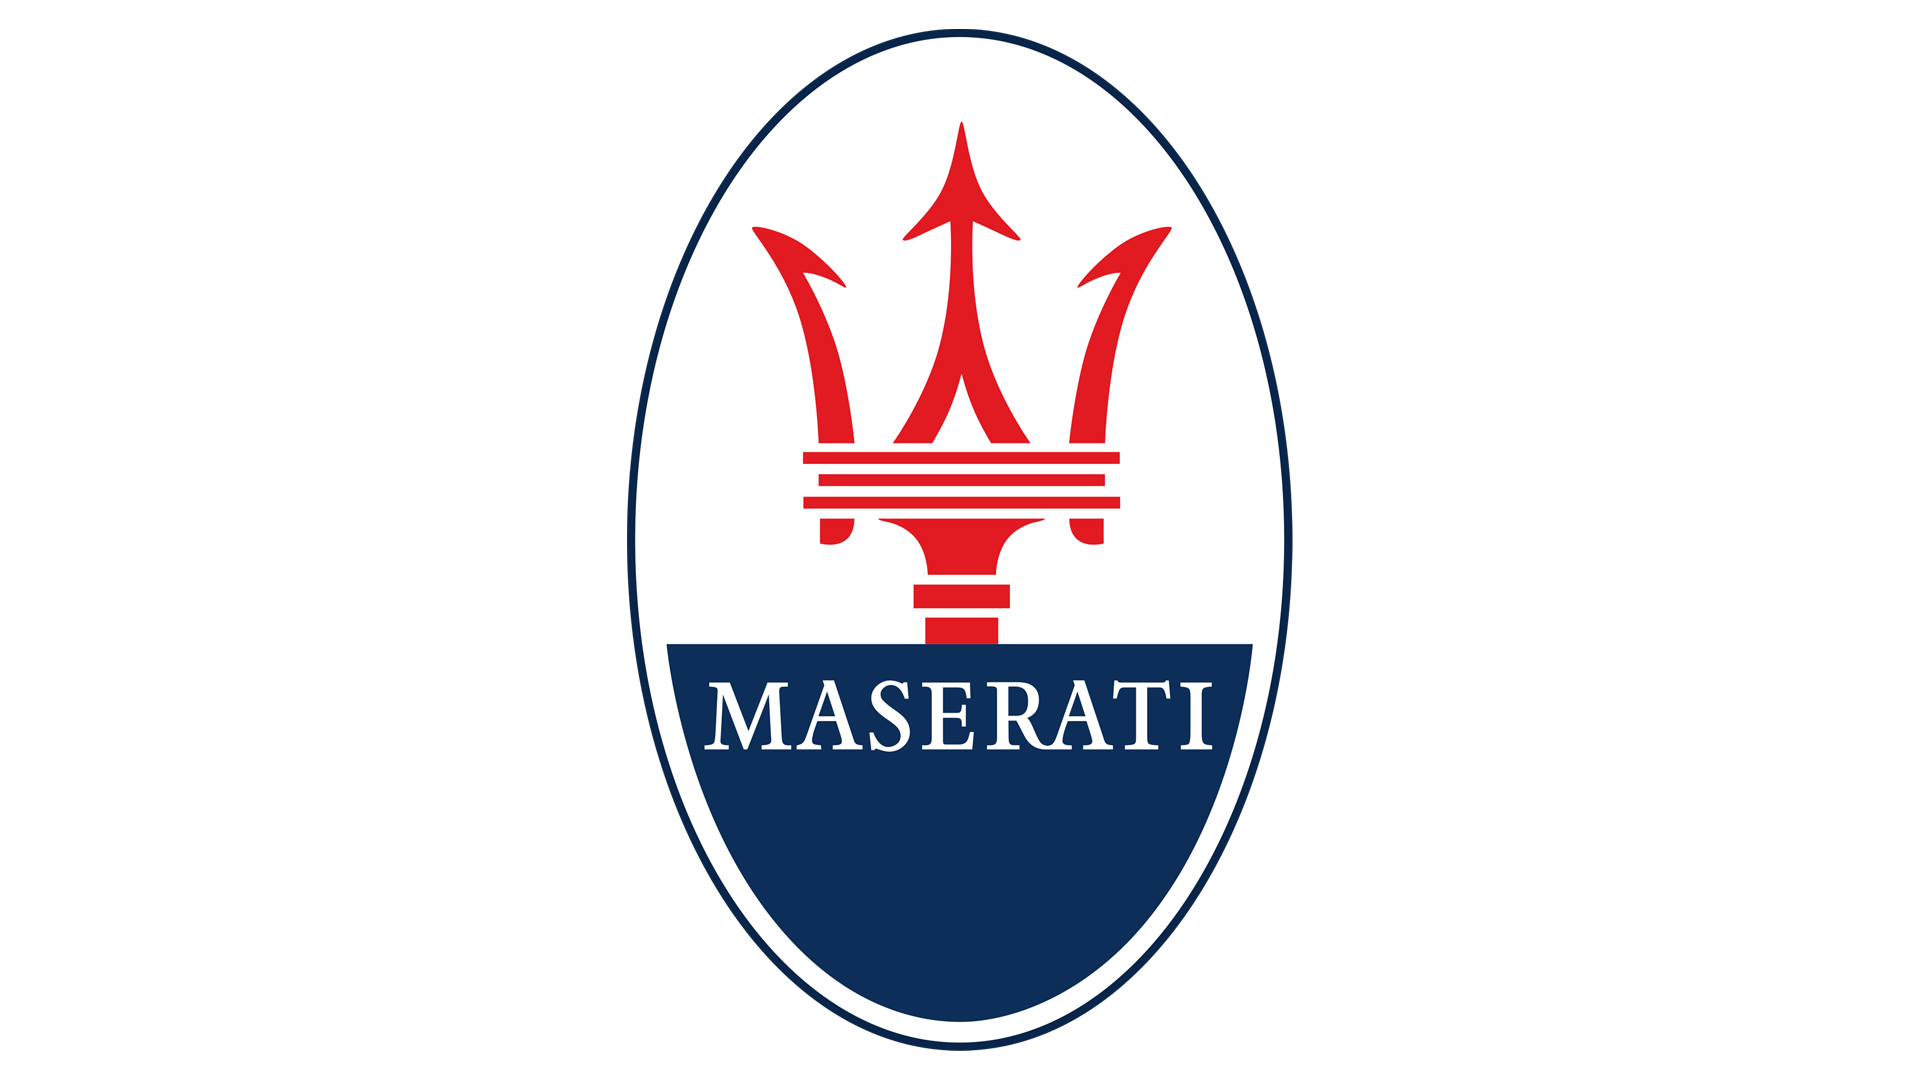 Maserati Emblem 1920x1080 (HD